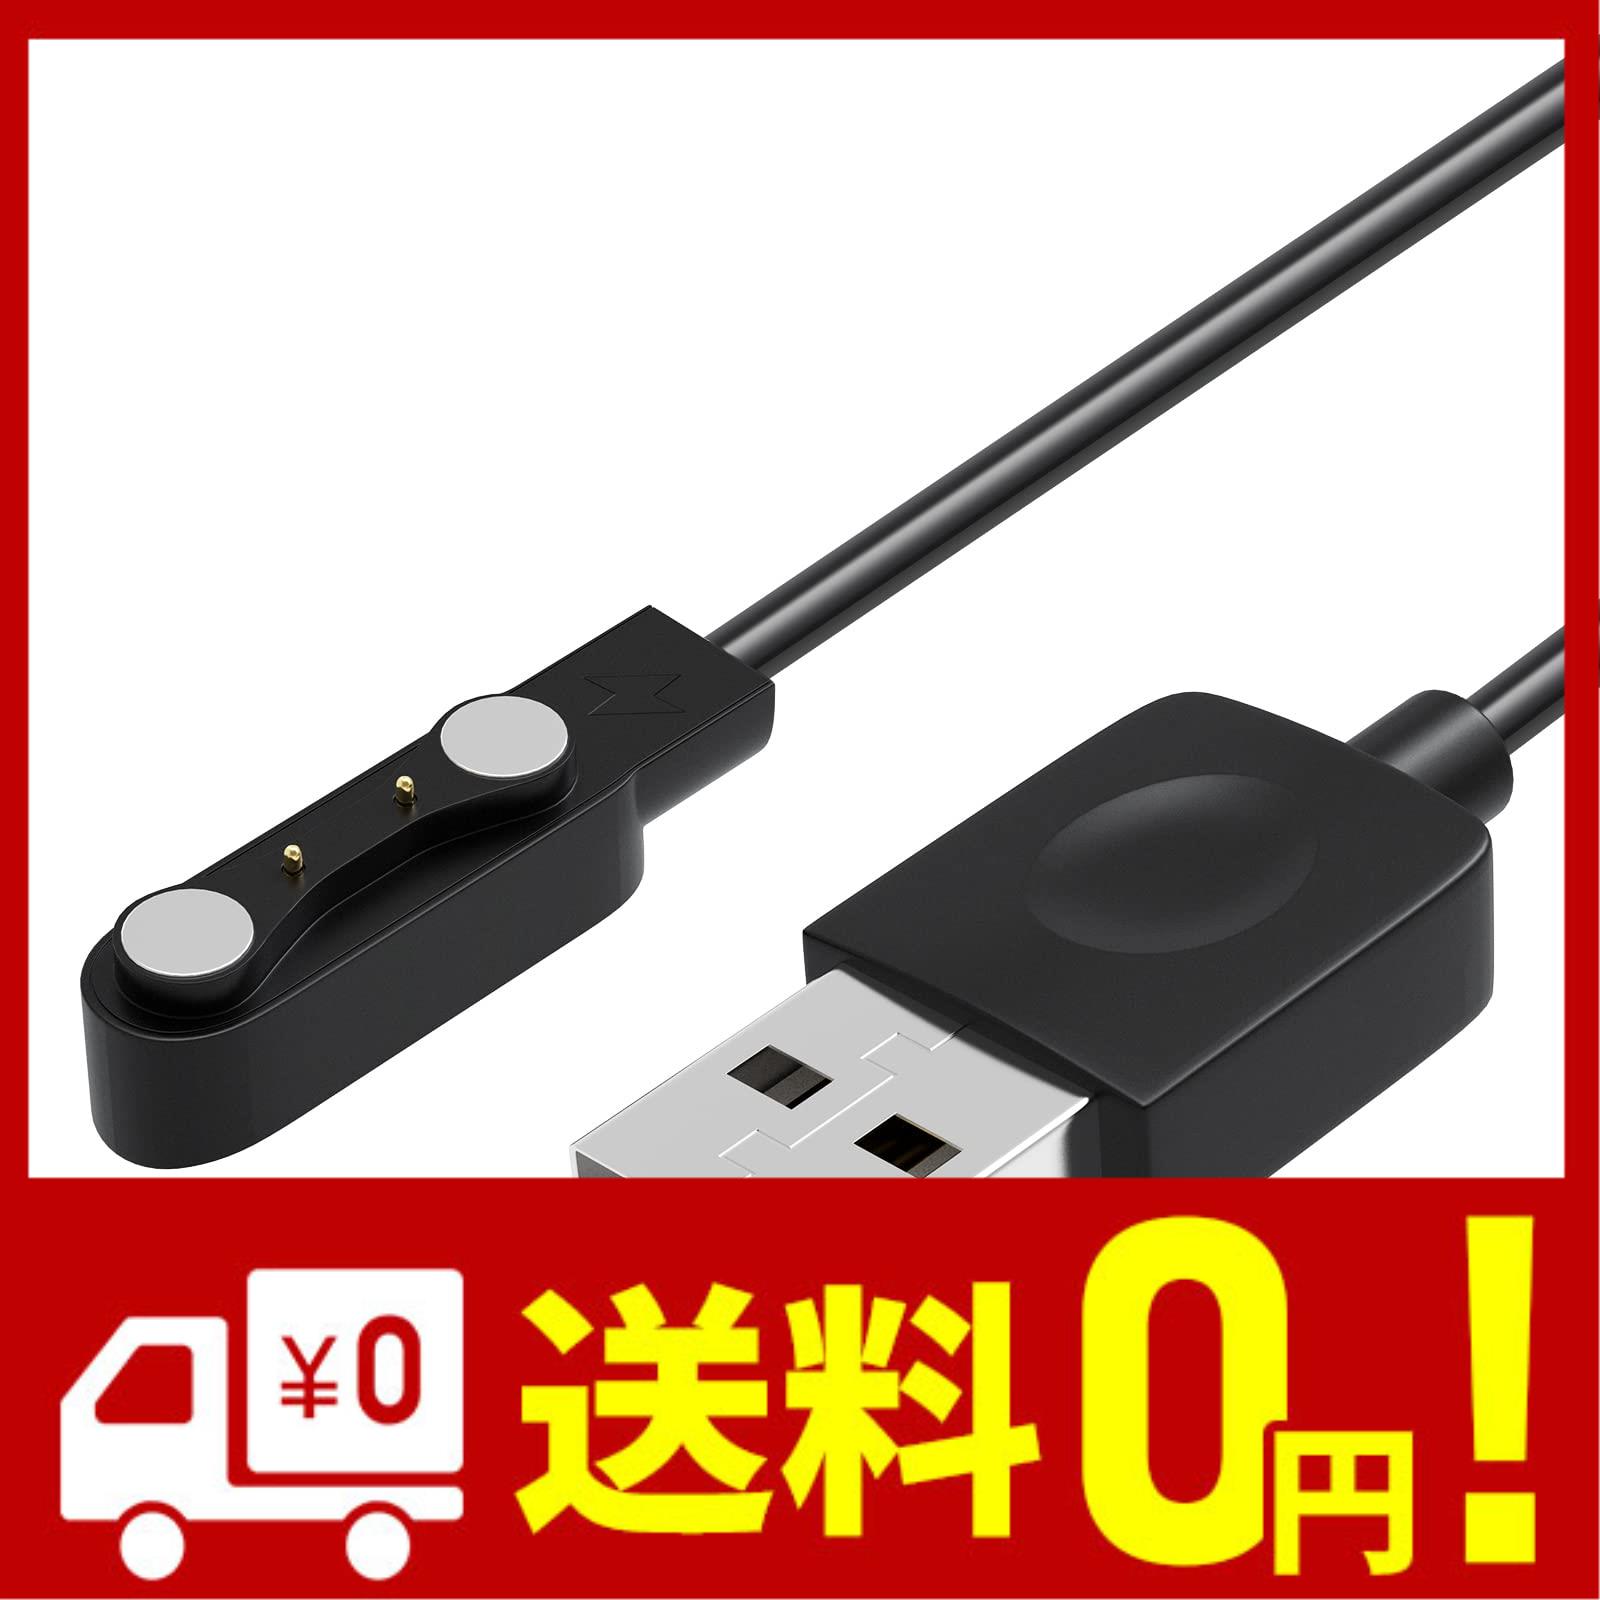 スマートウォッチ USB充電ケーブル ピン間の距離 4.0mm 対応